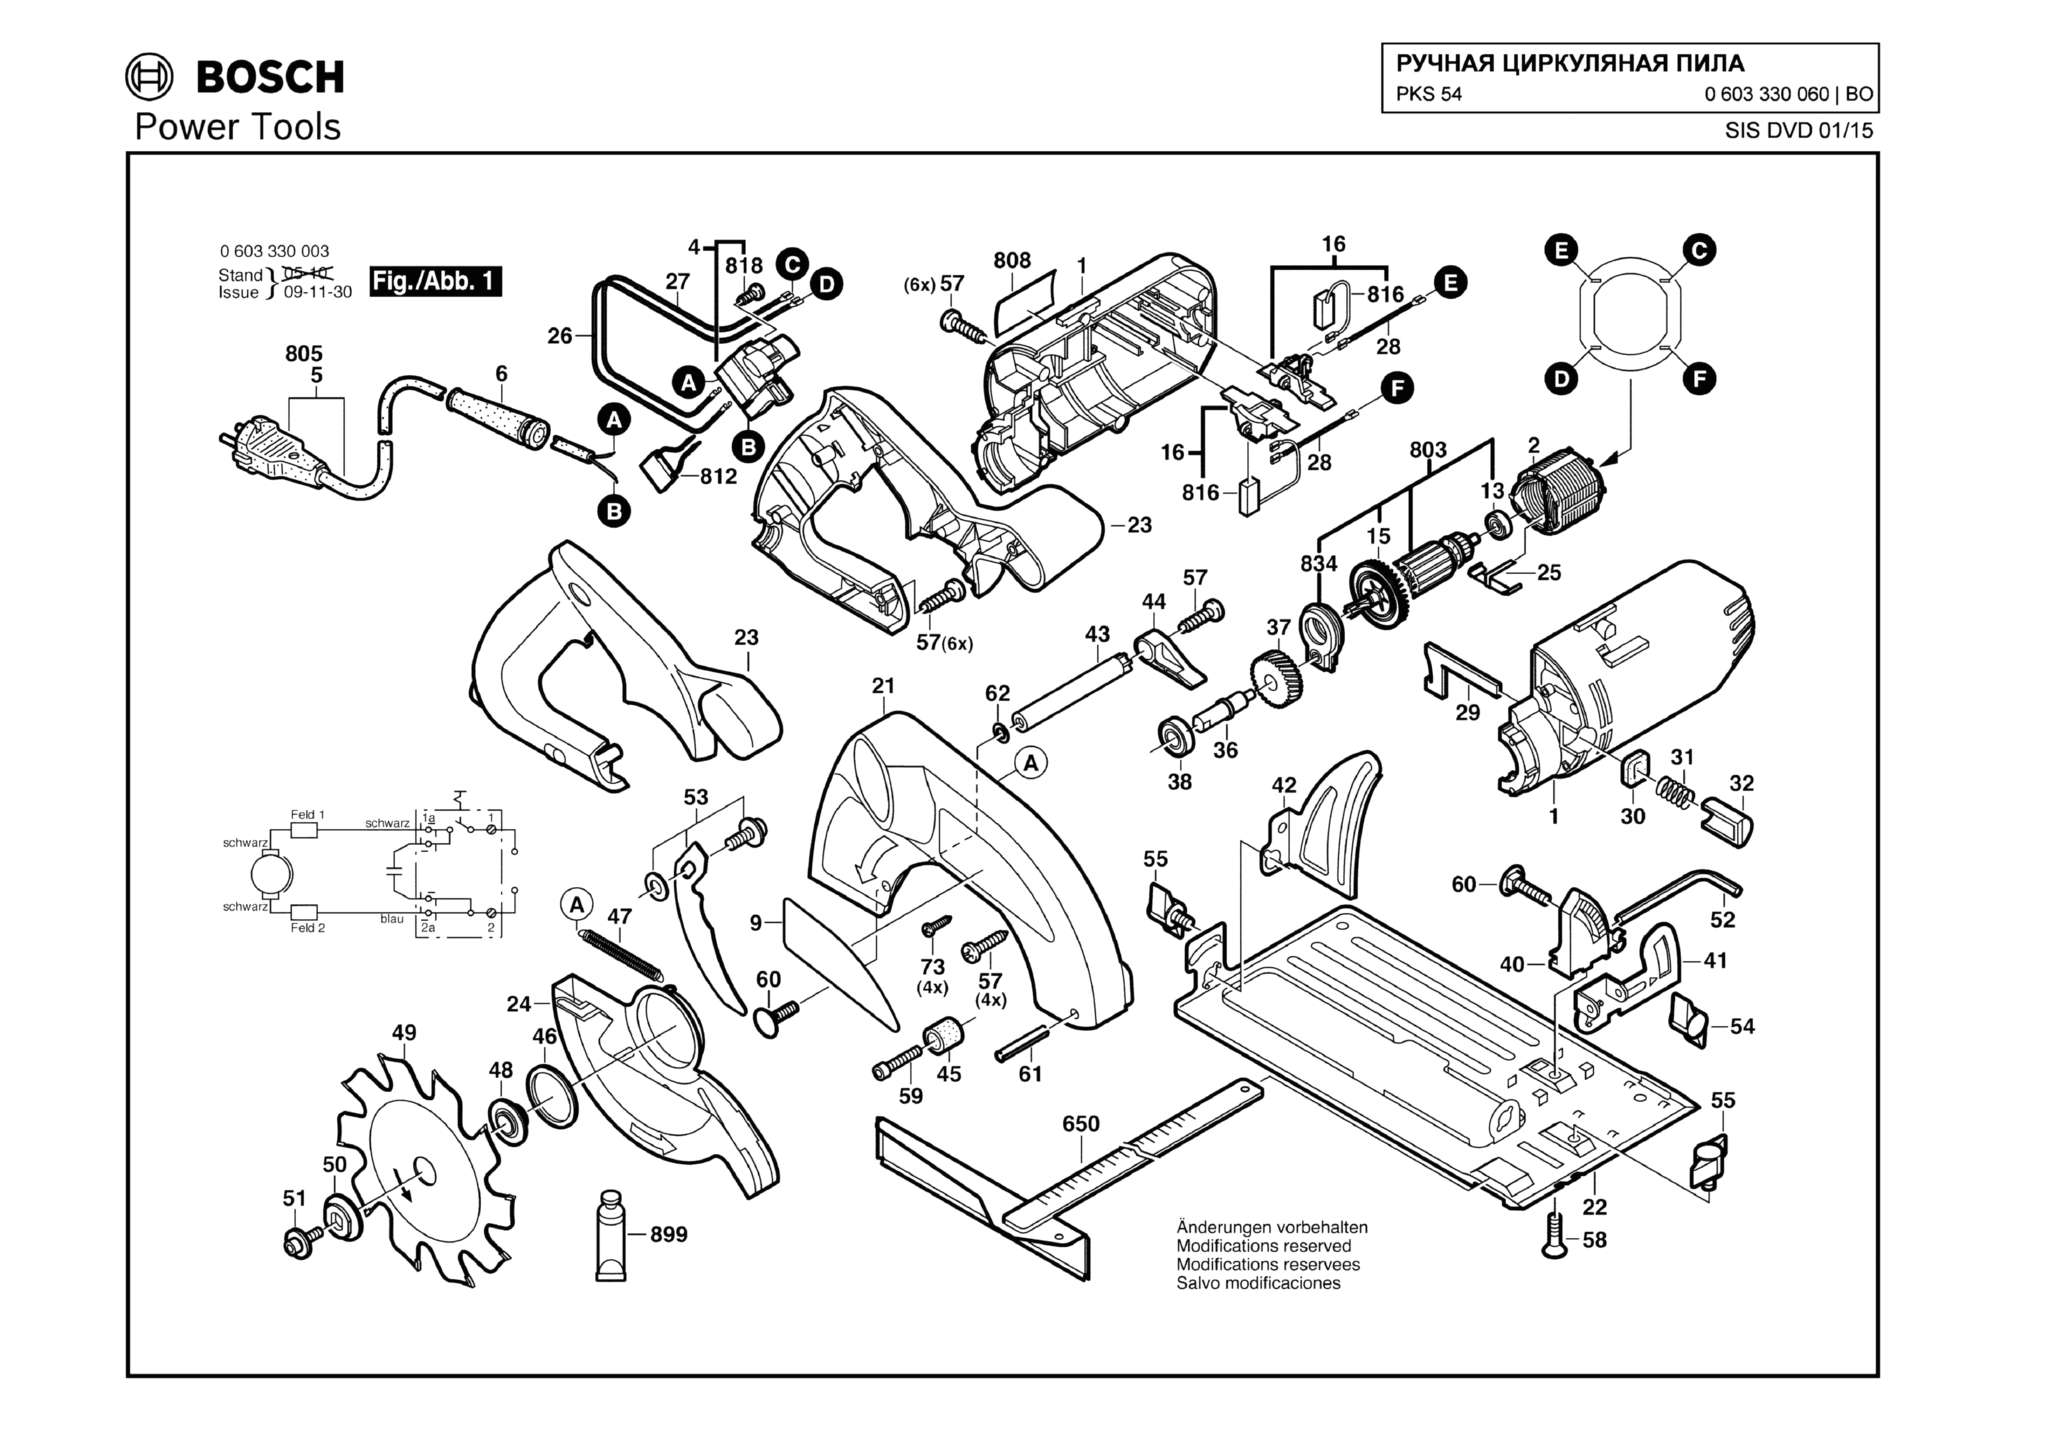 Запчасти, схема и деталировка Bosch PKS 54 (ТИП 0603330060)